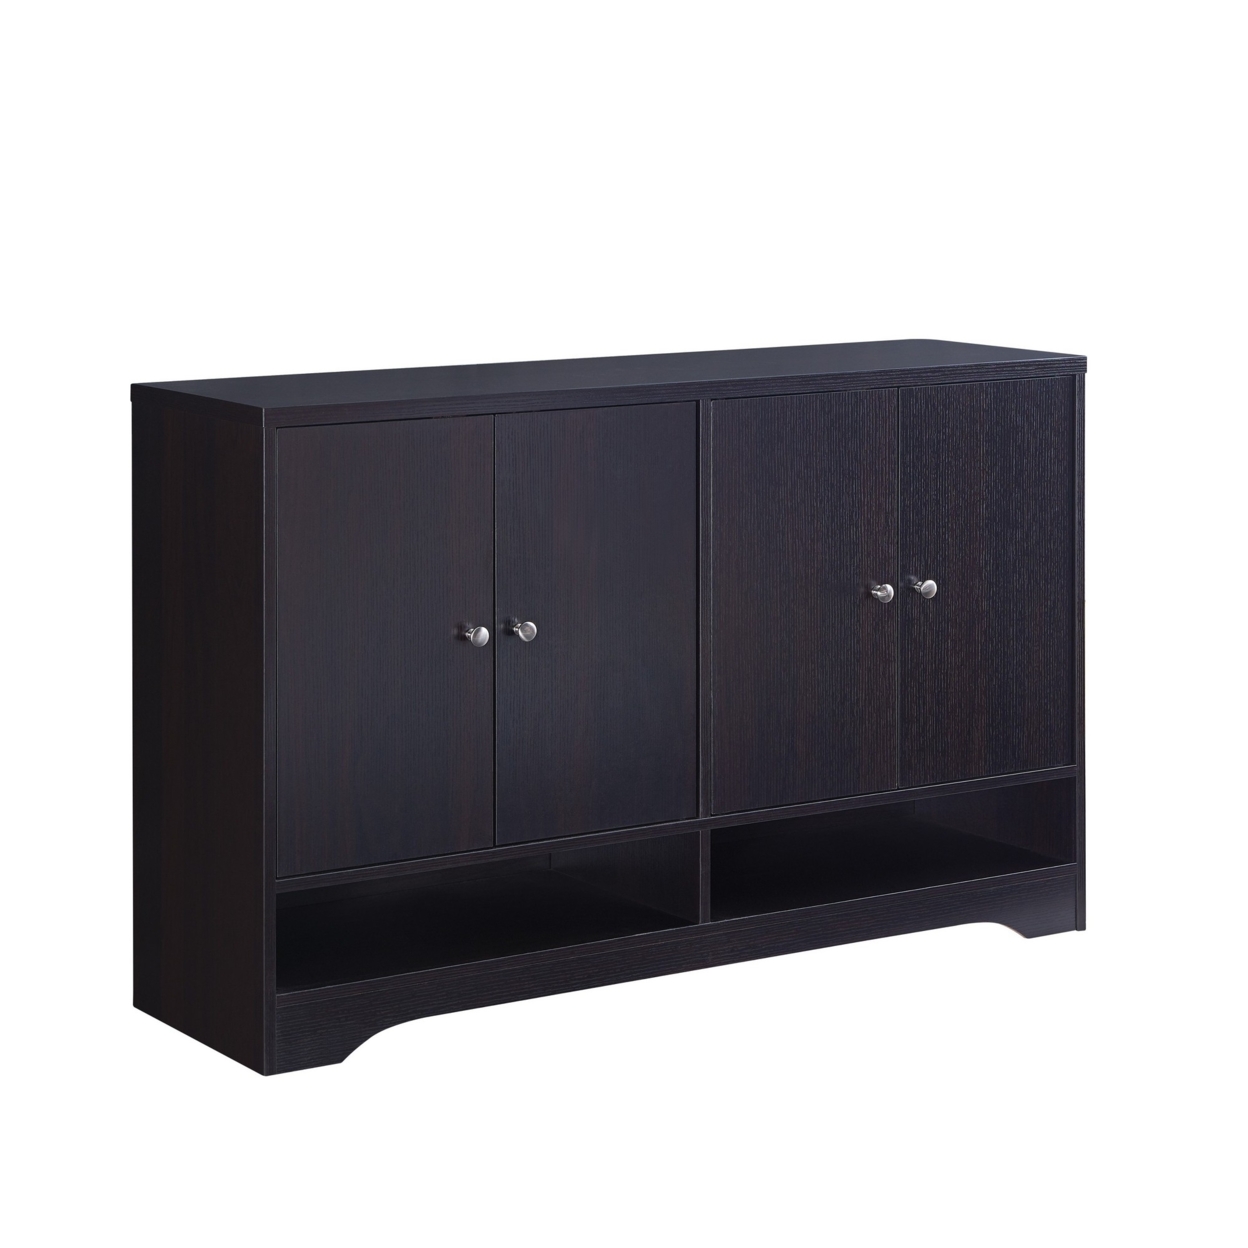 2 Double Door Wooden Storage Cabinet With Round Knobs, Dark Brown- Saltoro Sherpi